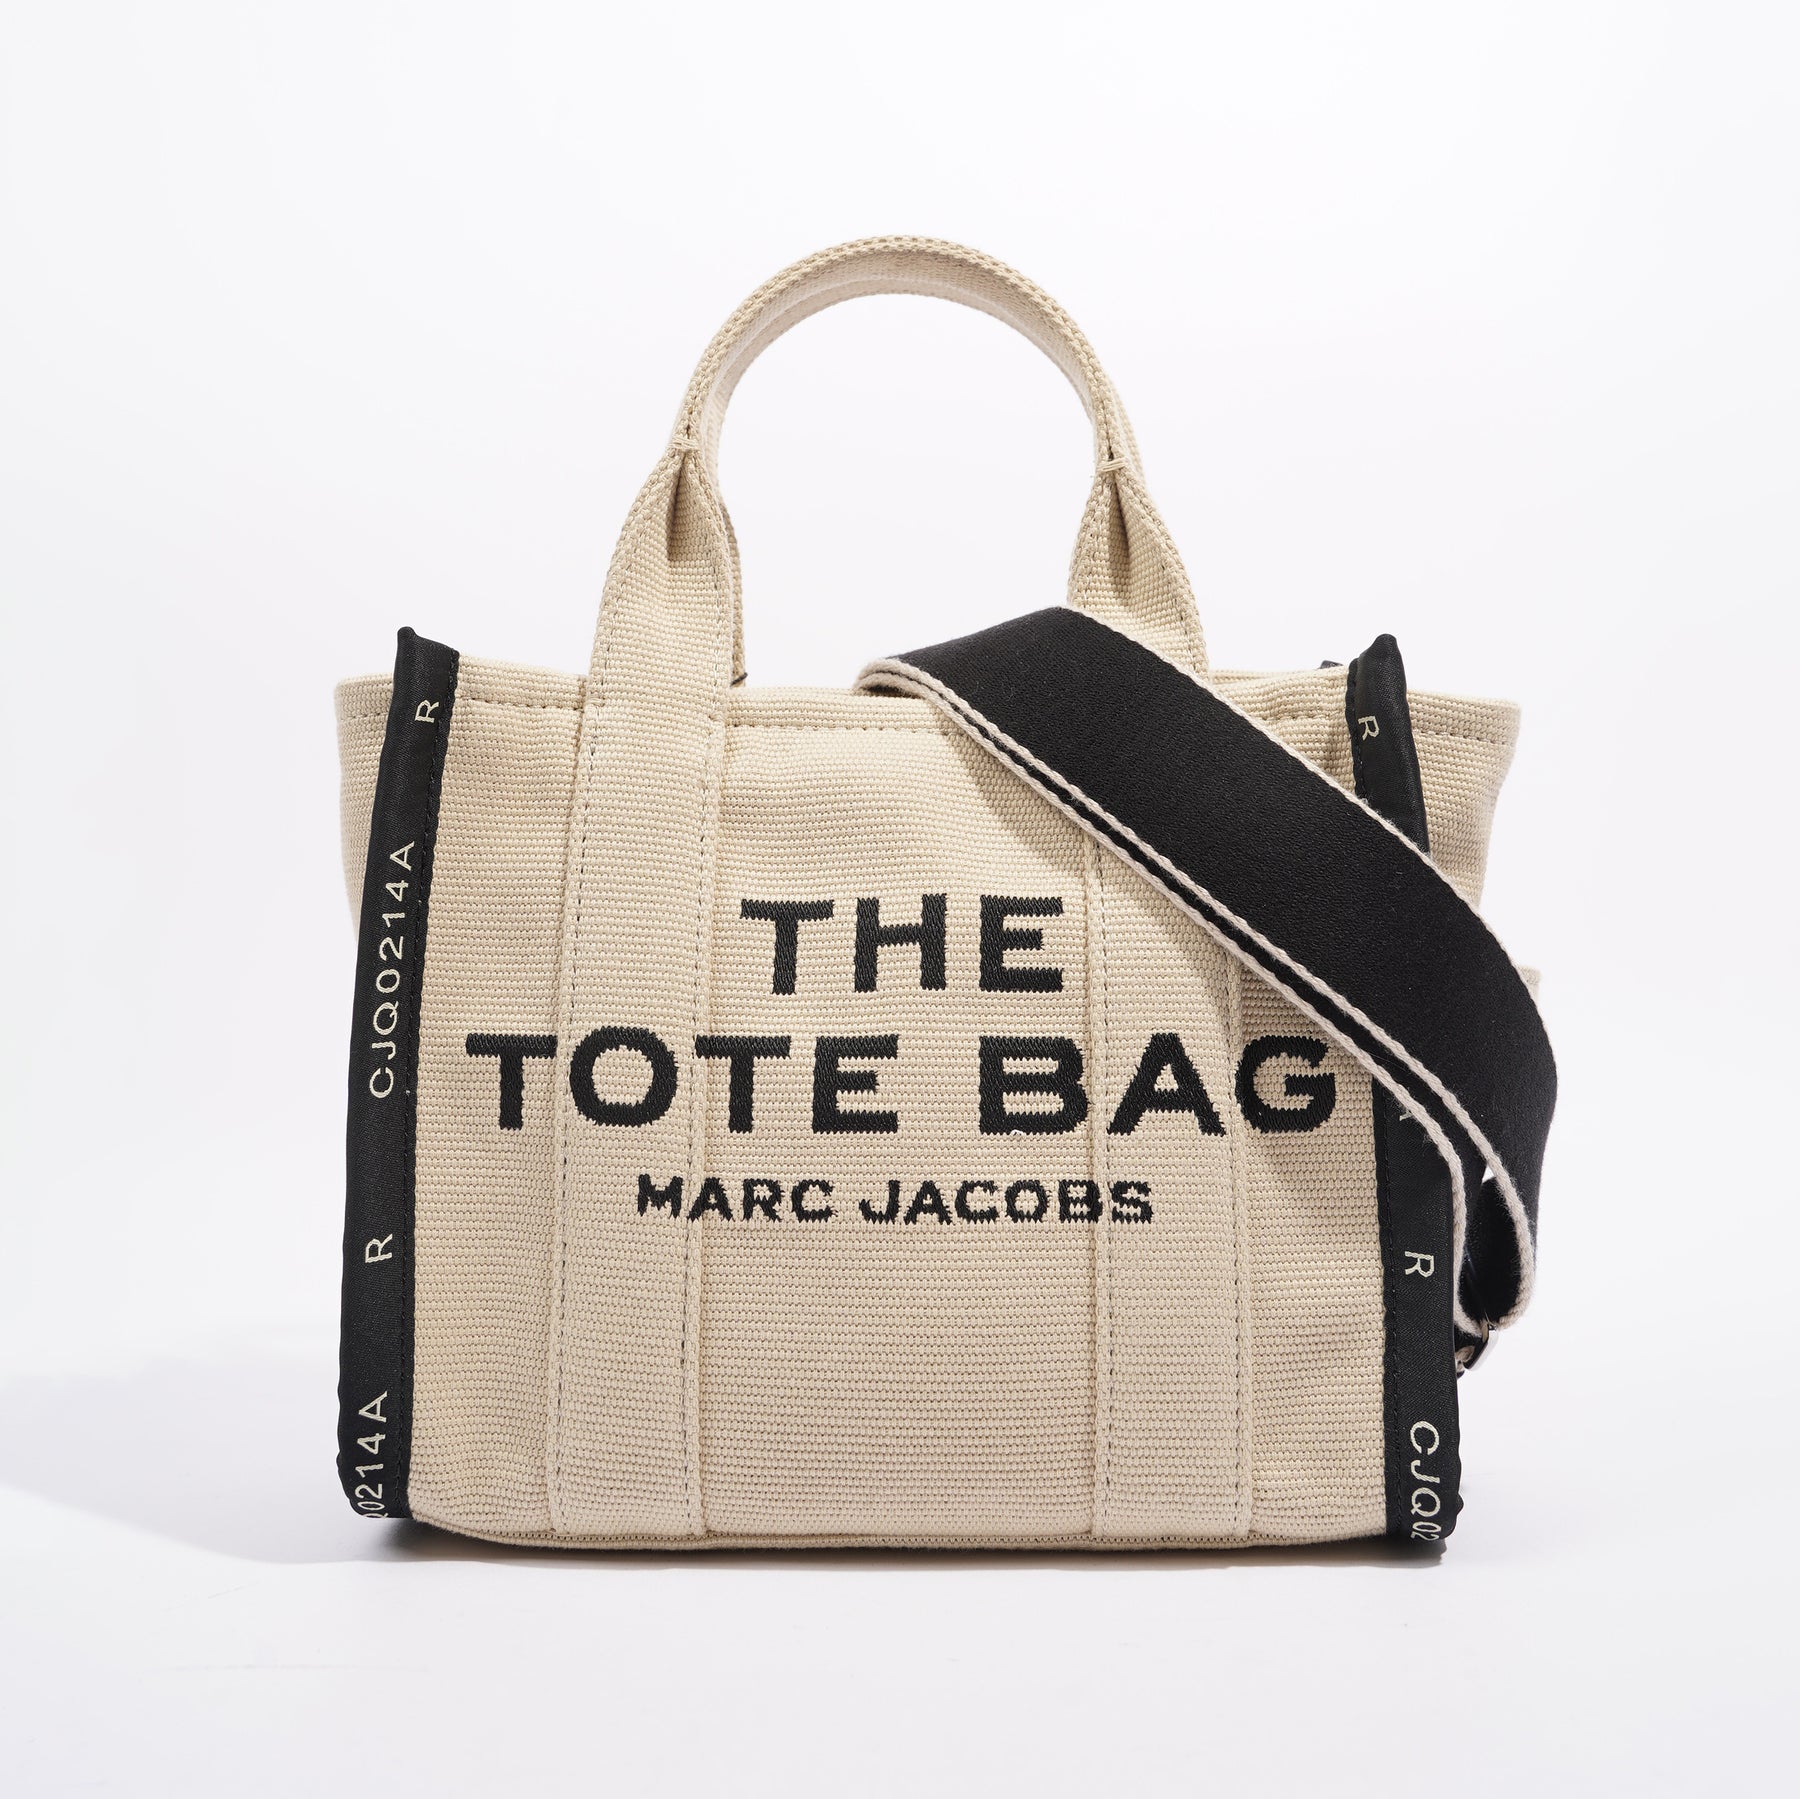 Brand New Unused Goyard St Louis GM Tote Bag Black / Tan, Luxury